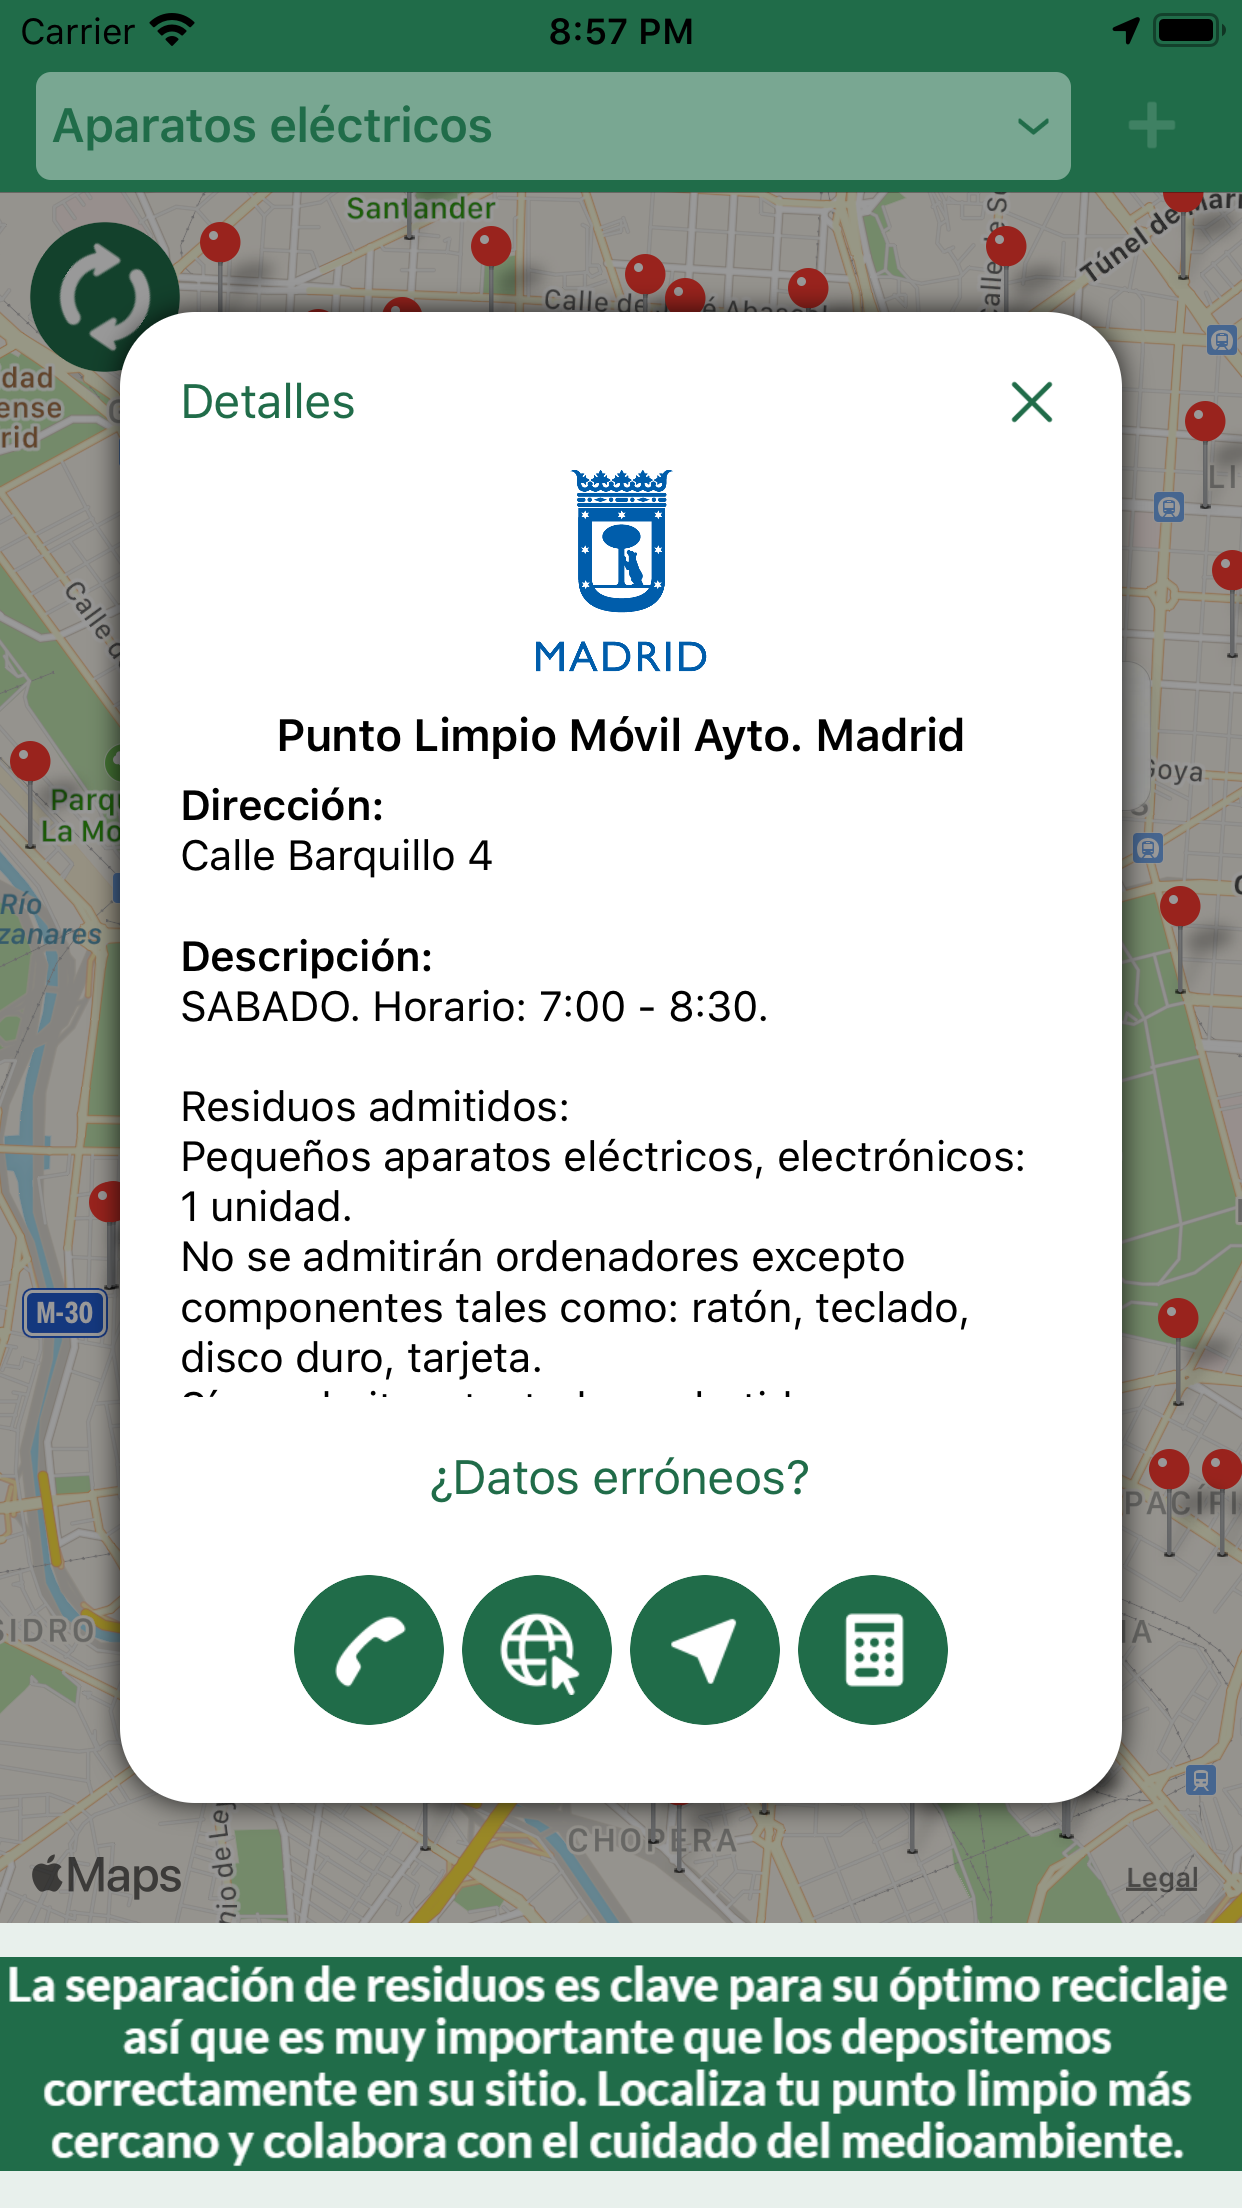 Mapa con puntos Madrid - Bombillas